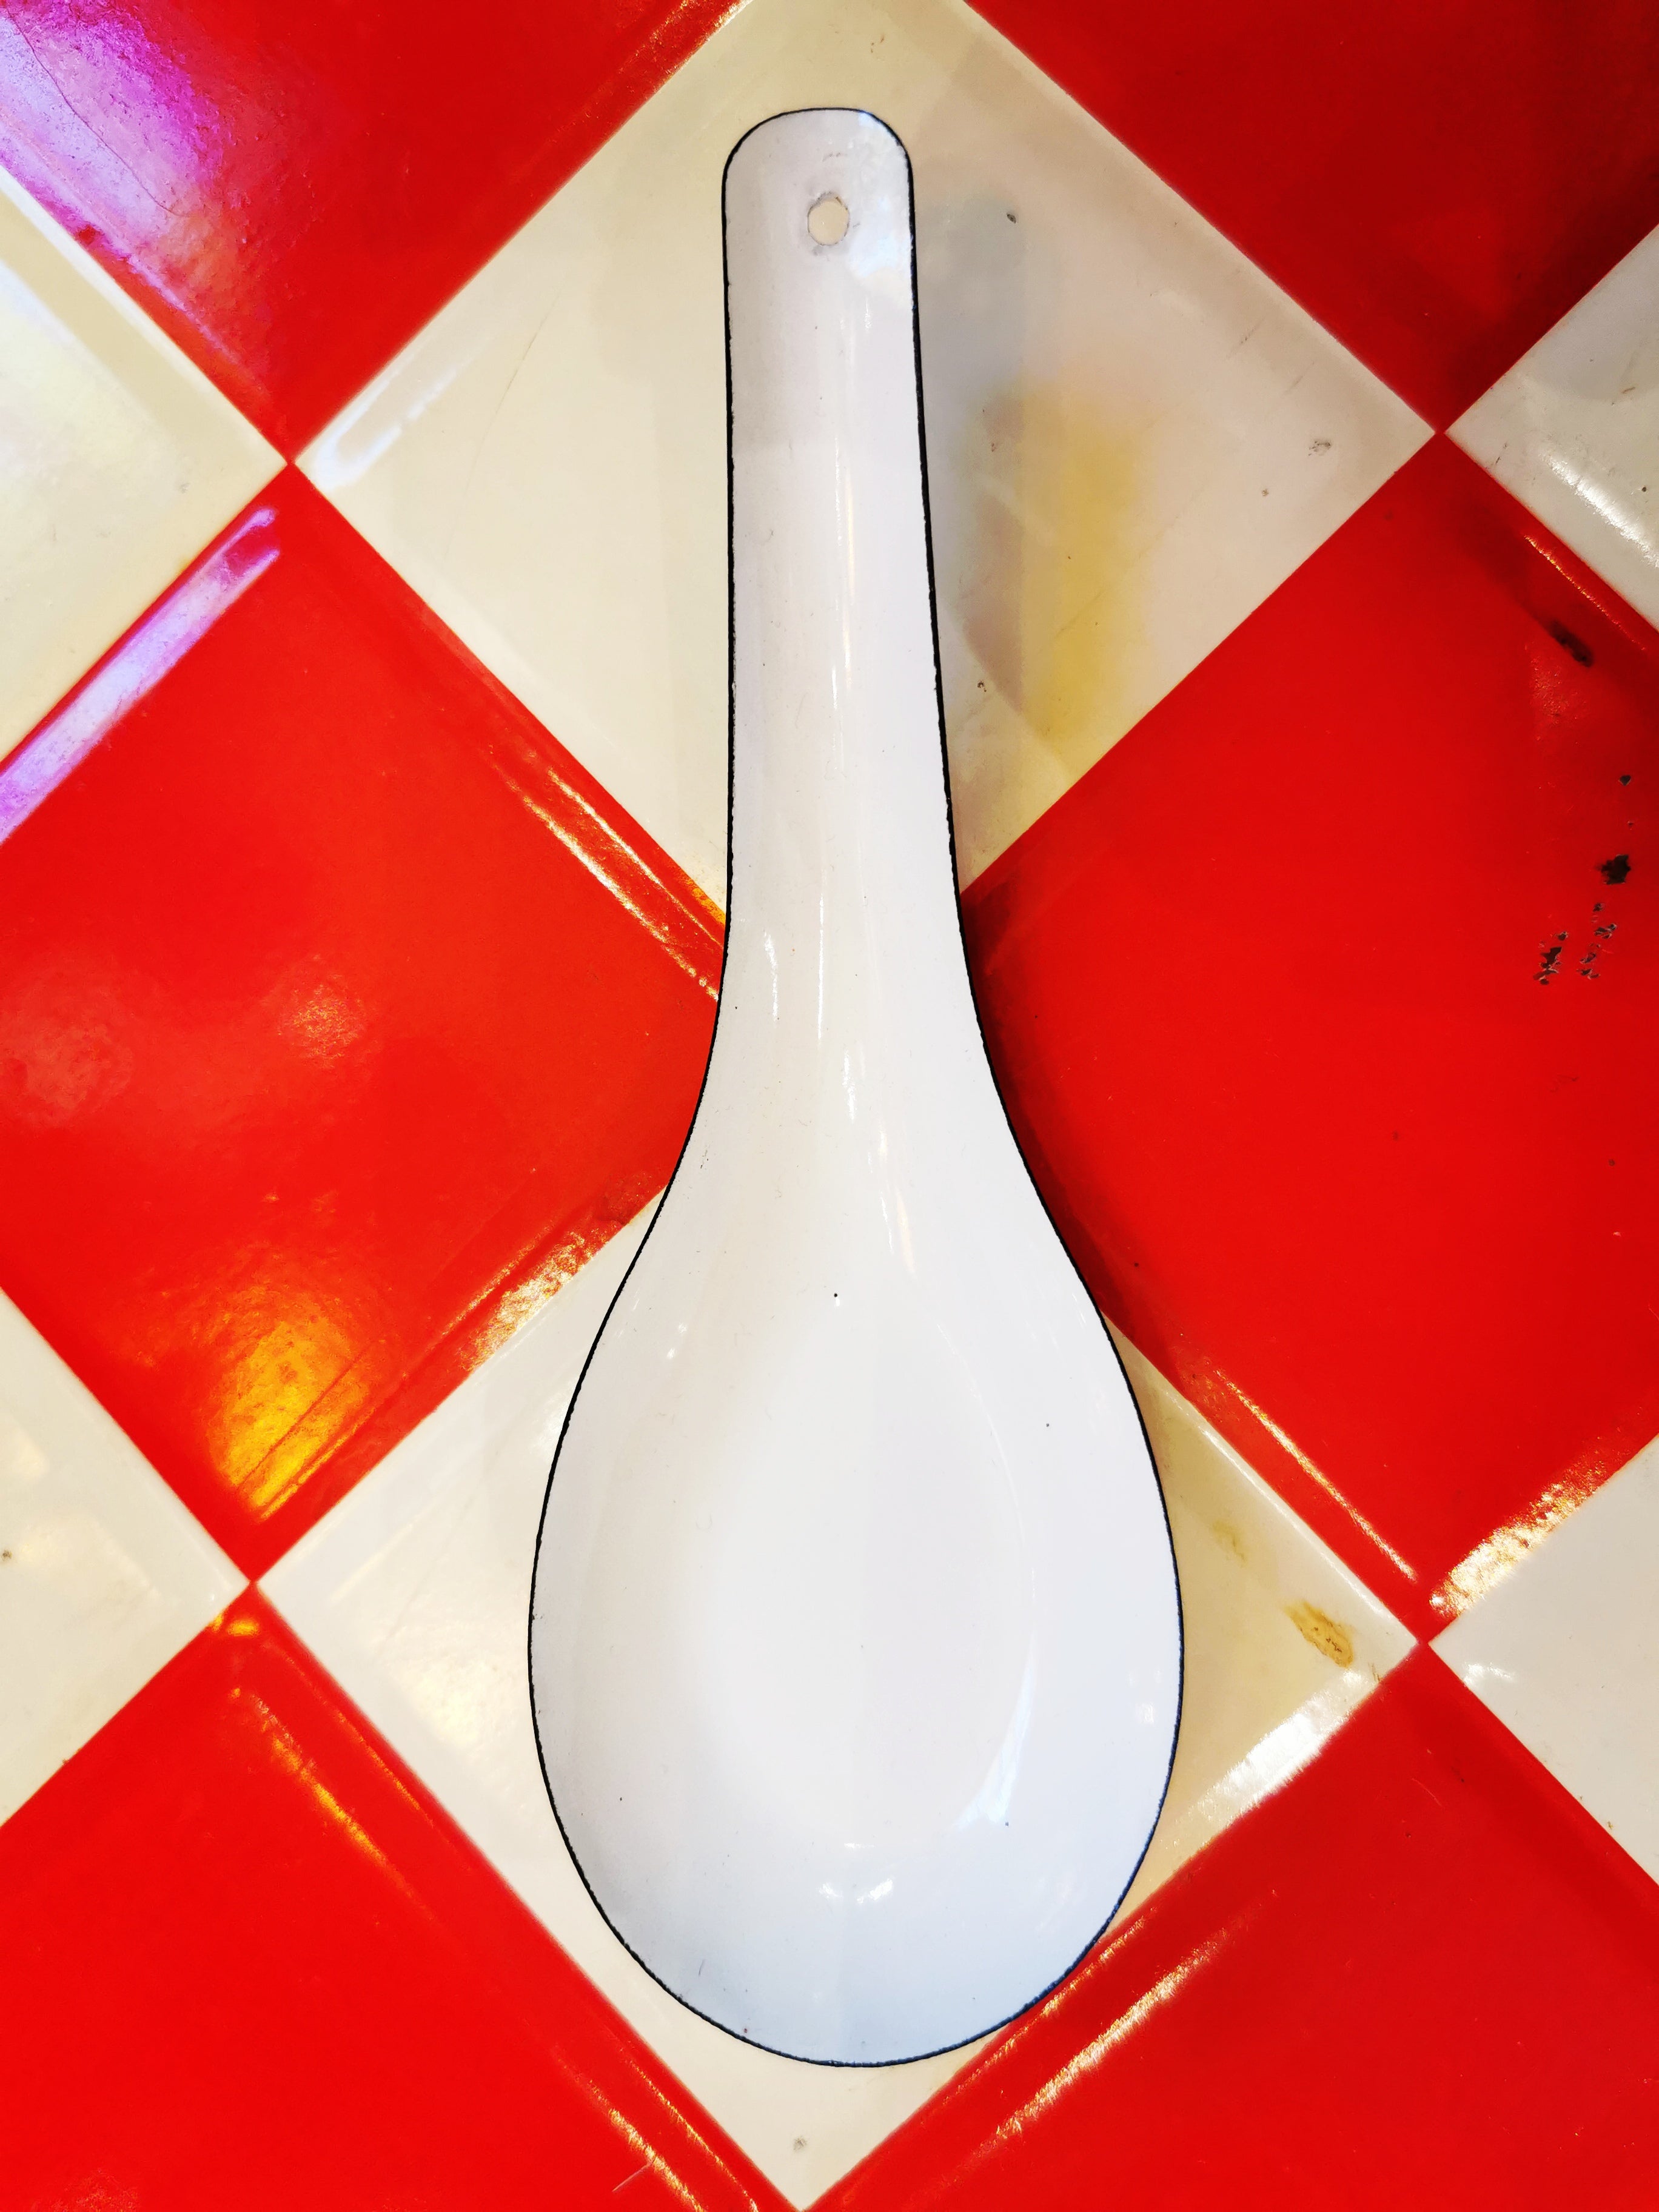 Vietnamese enamel spoons